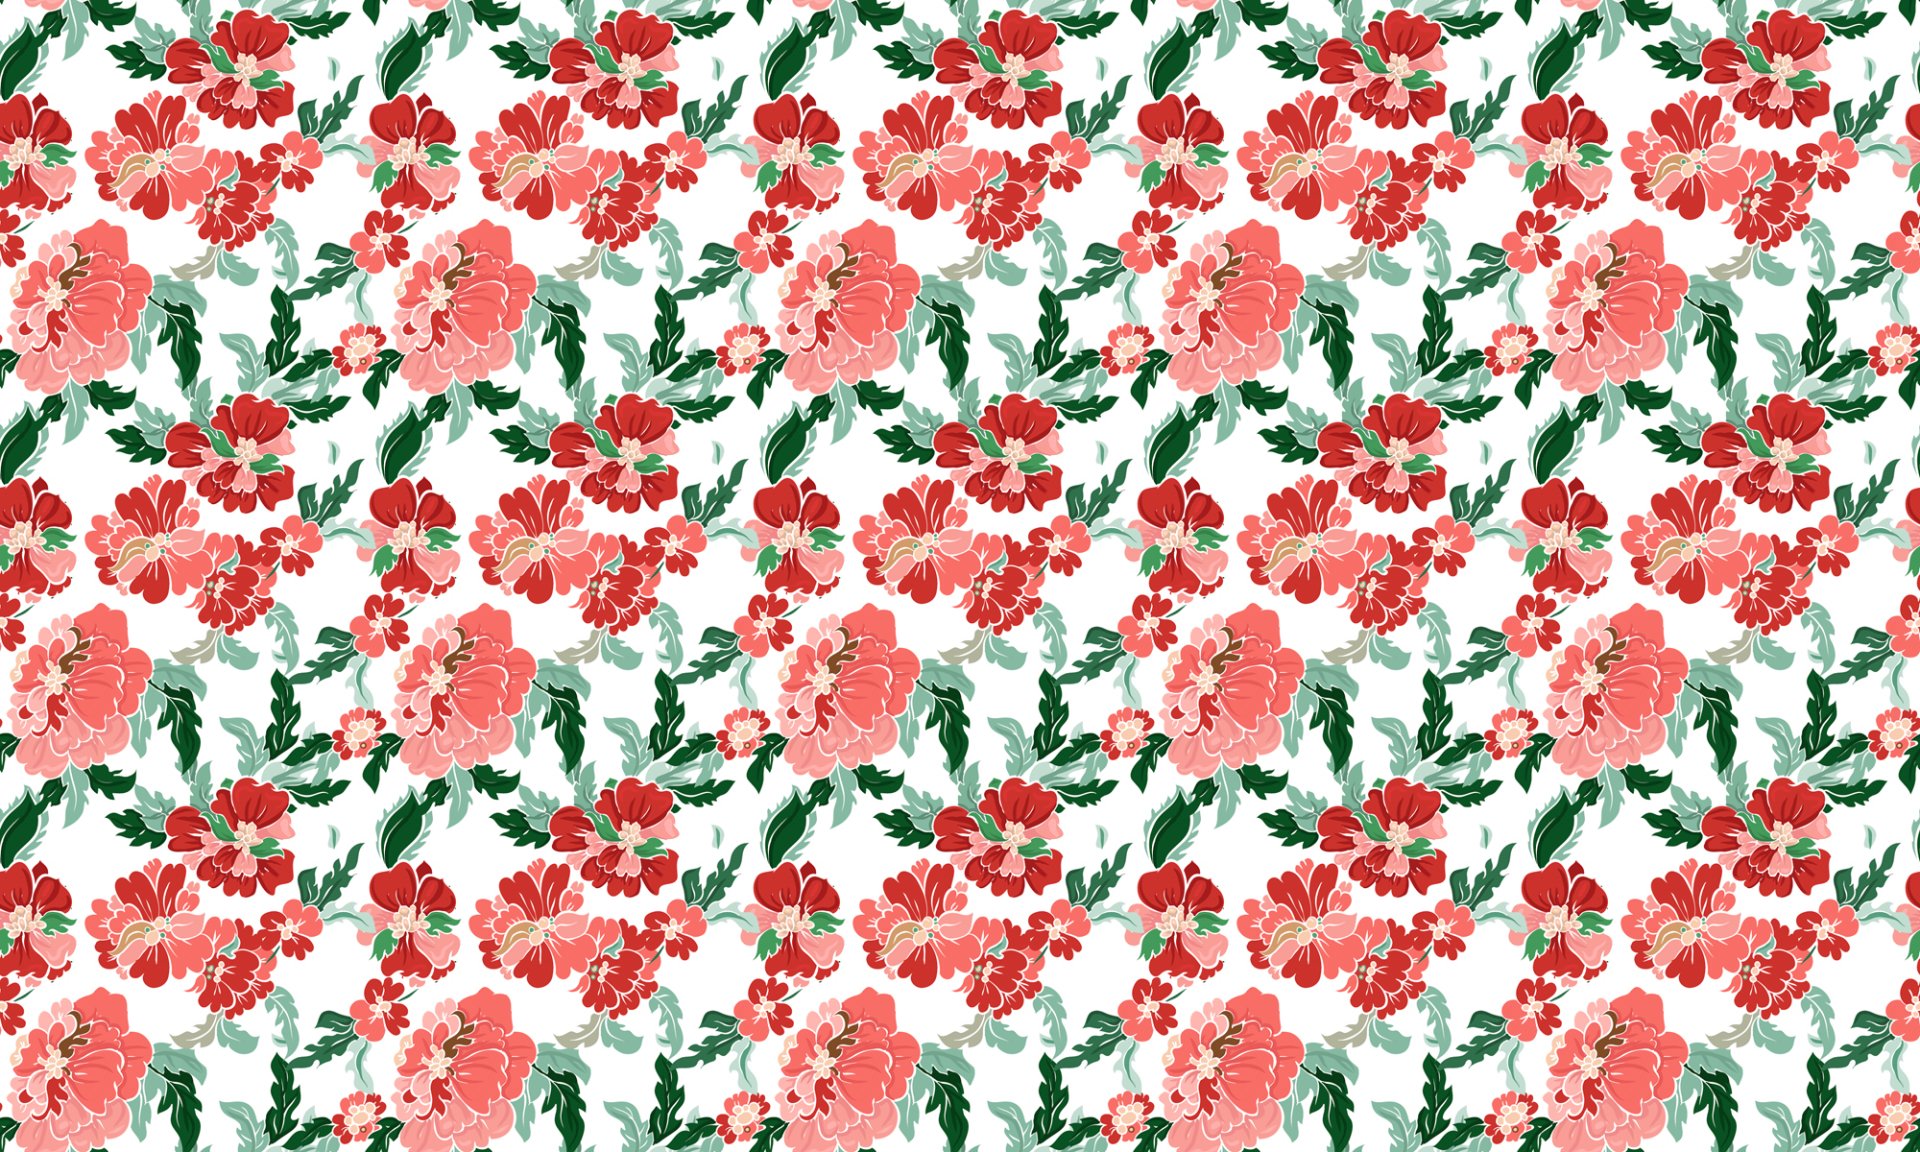 Artistic Flower HD Wallpaper